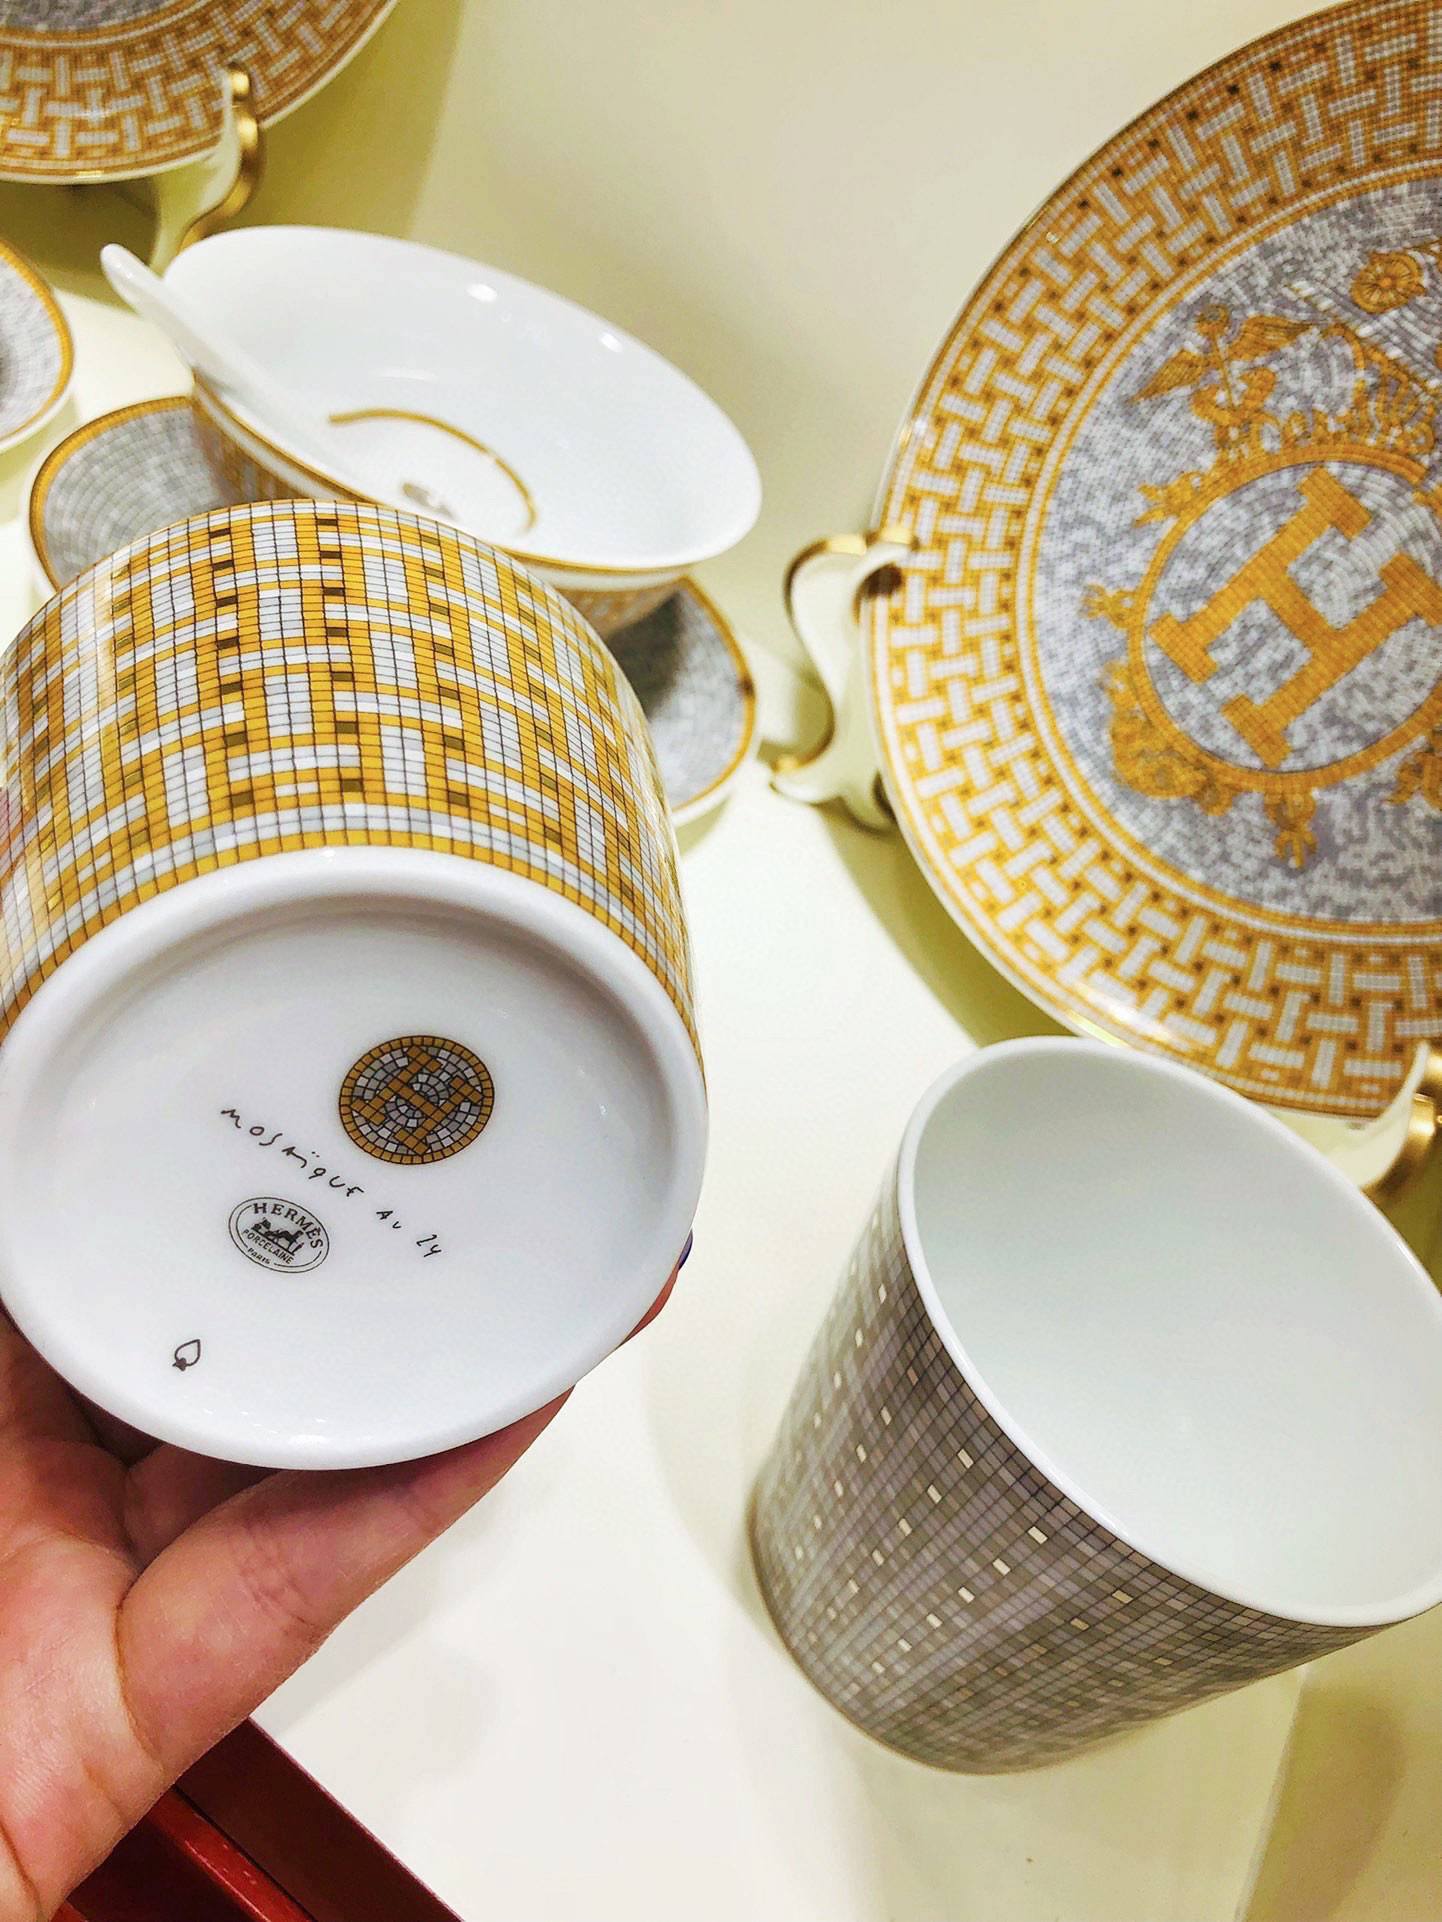 Hermès Mosaique AU 24 Gold Tea Cup and Saucer Set Hermes